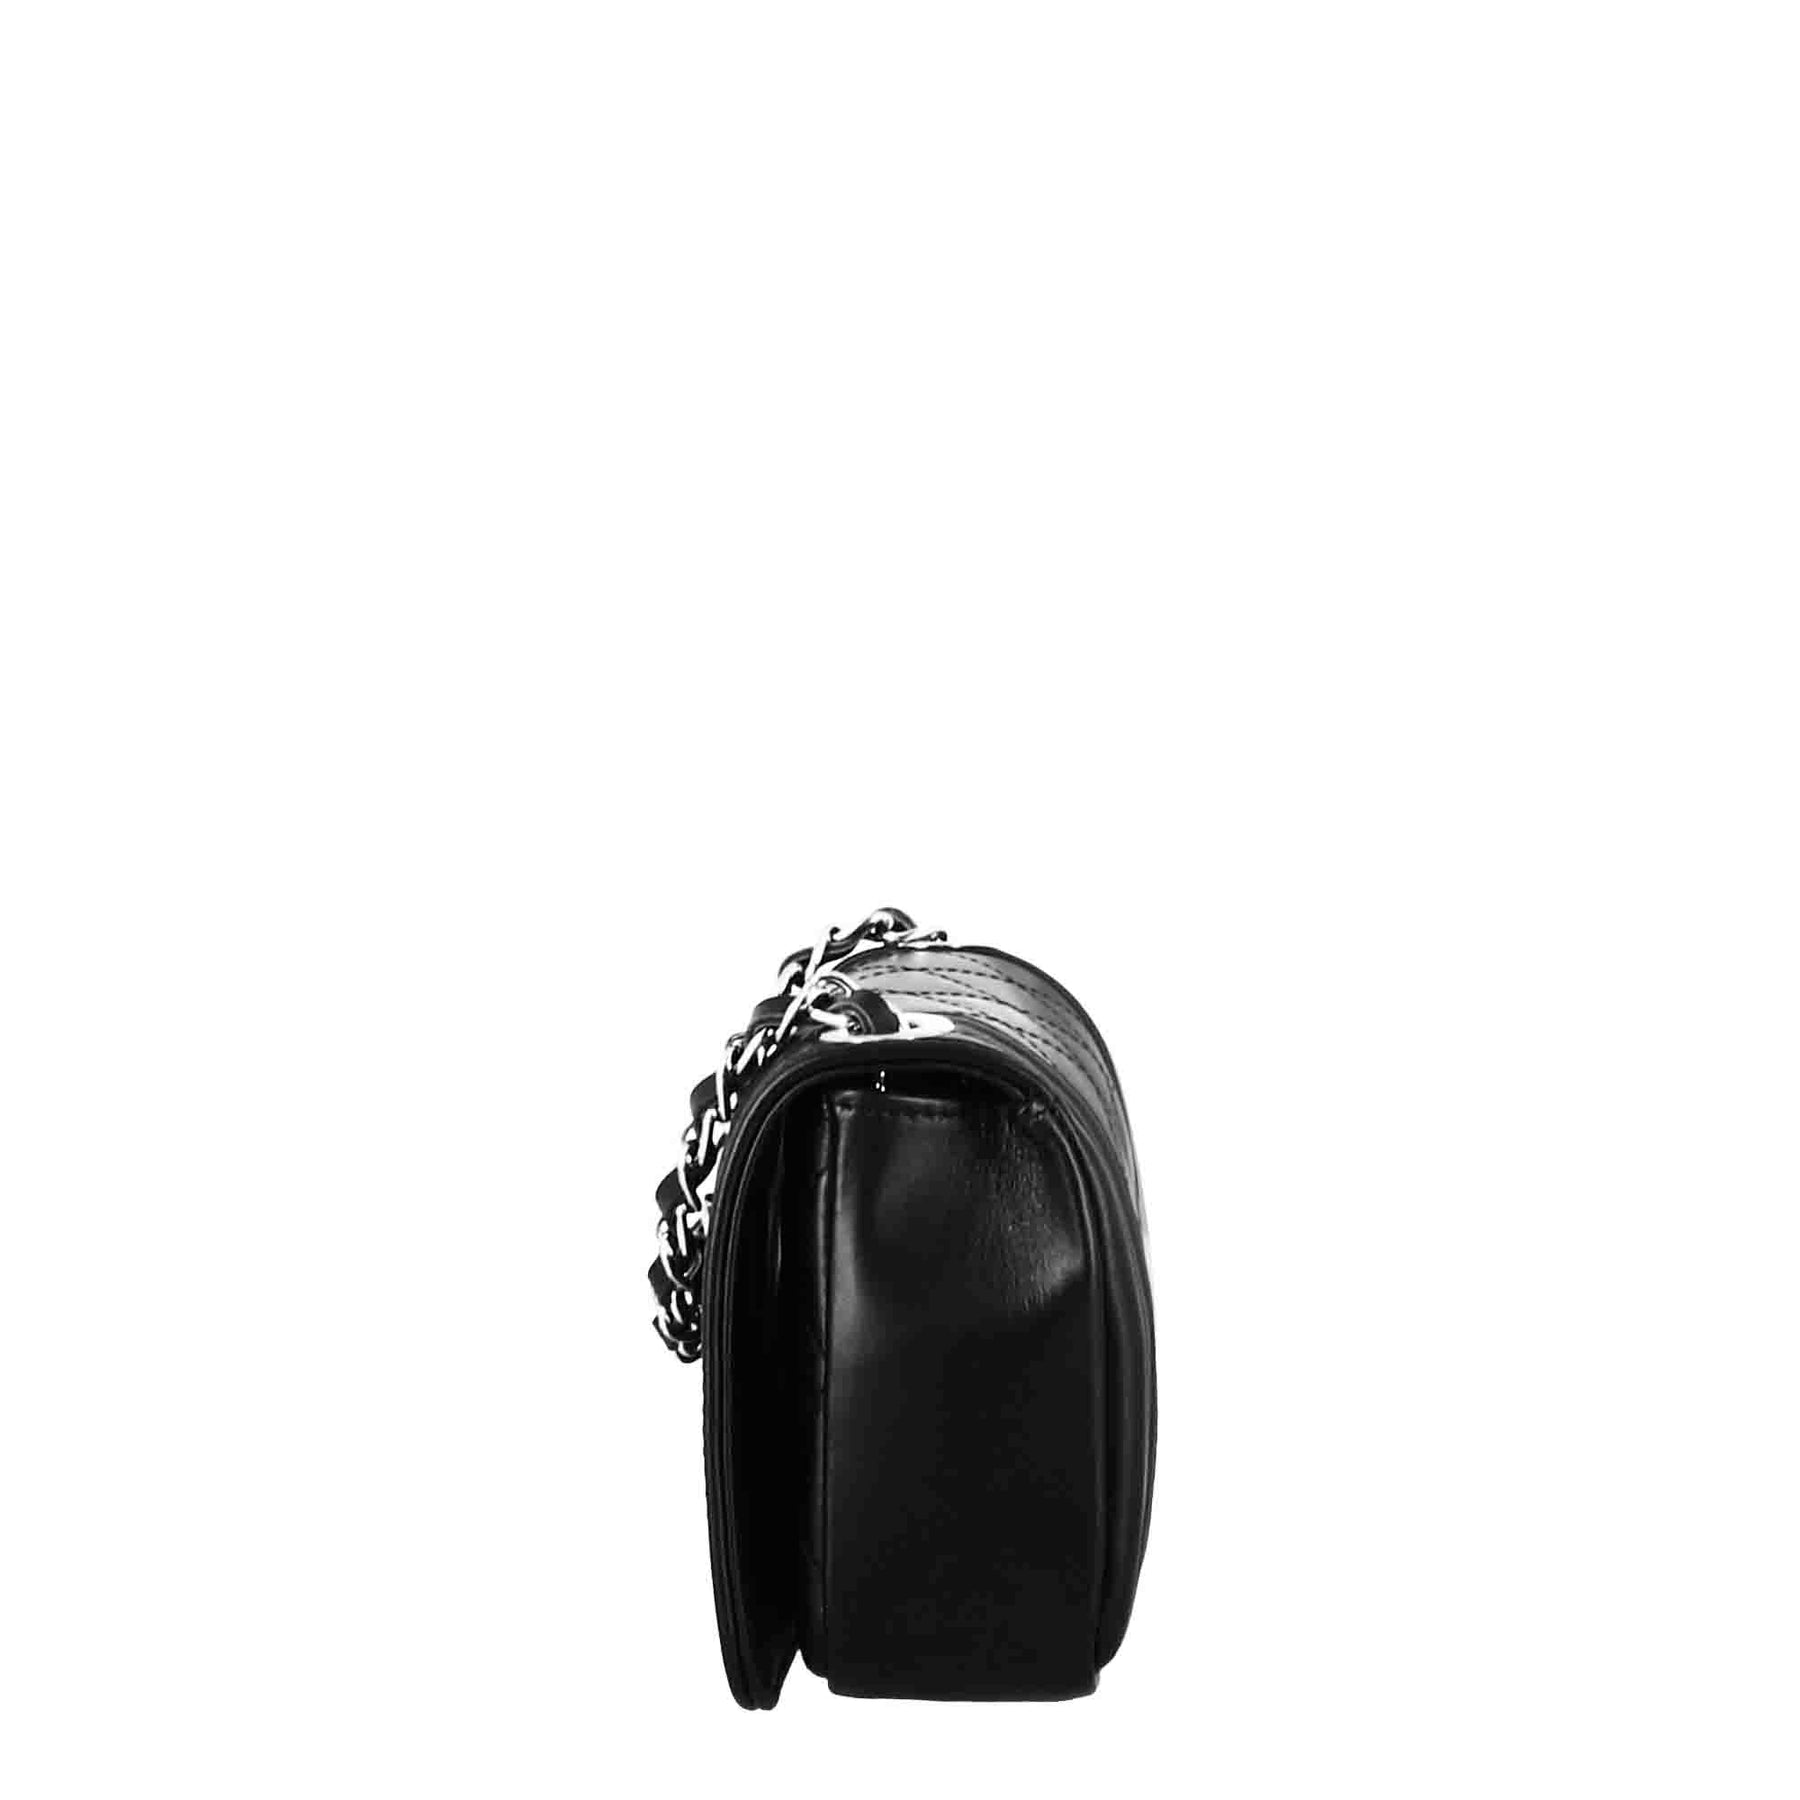 Timeless black quilted leather shoulder bag